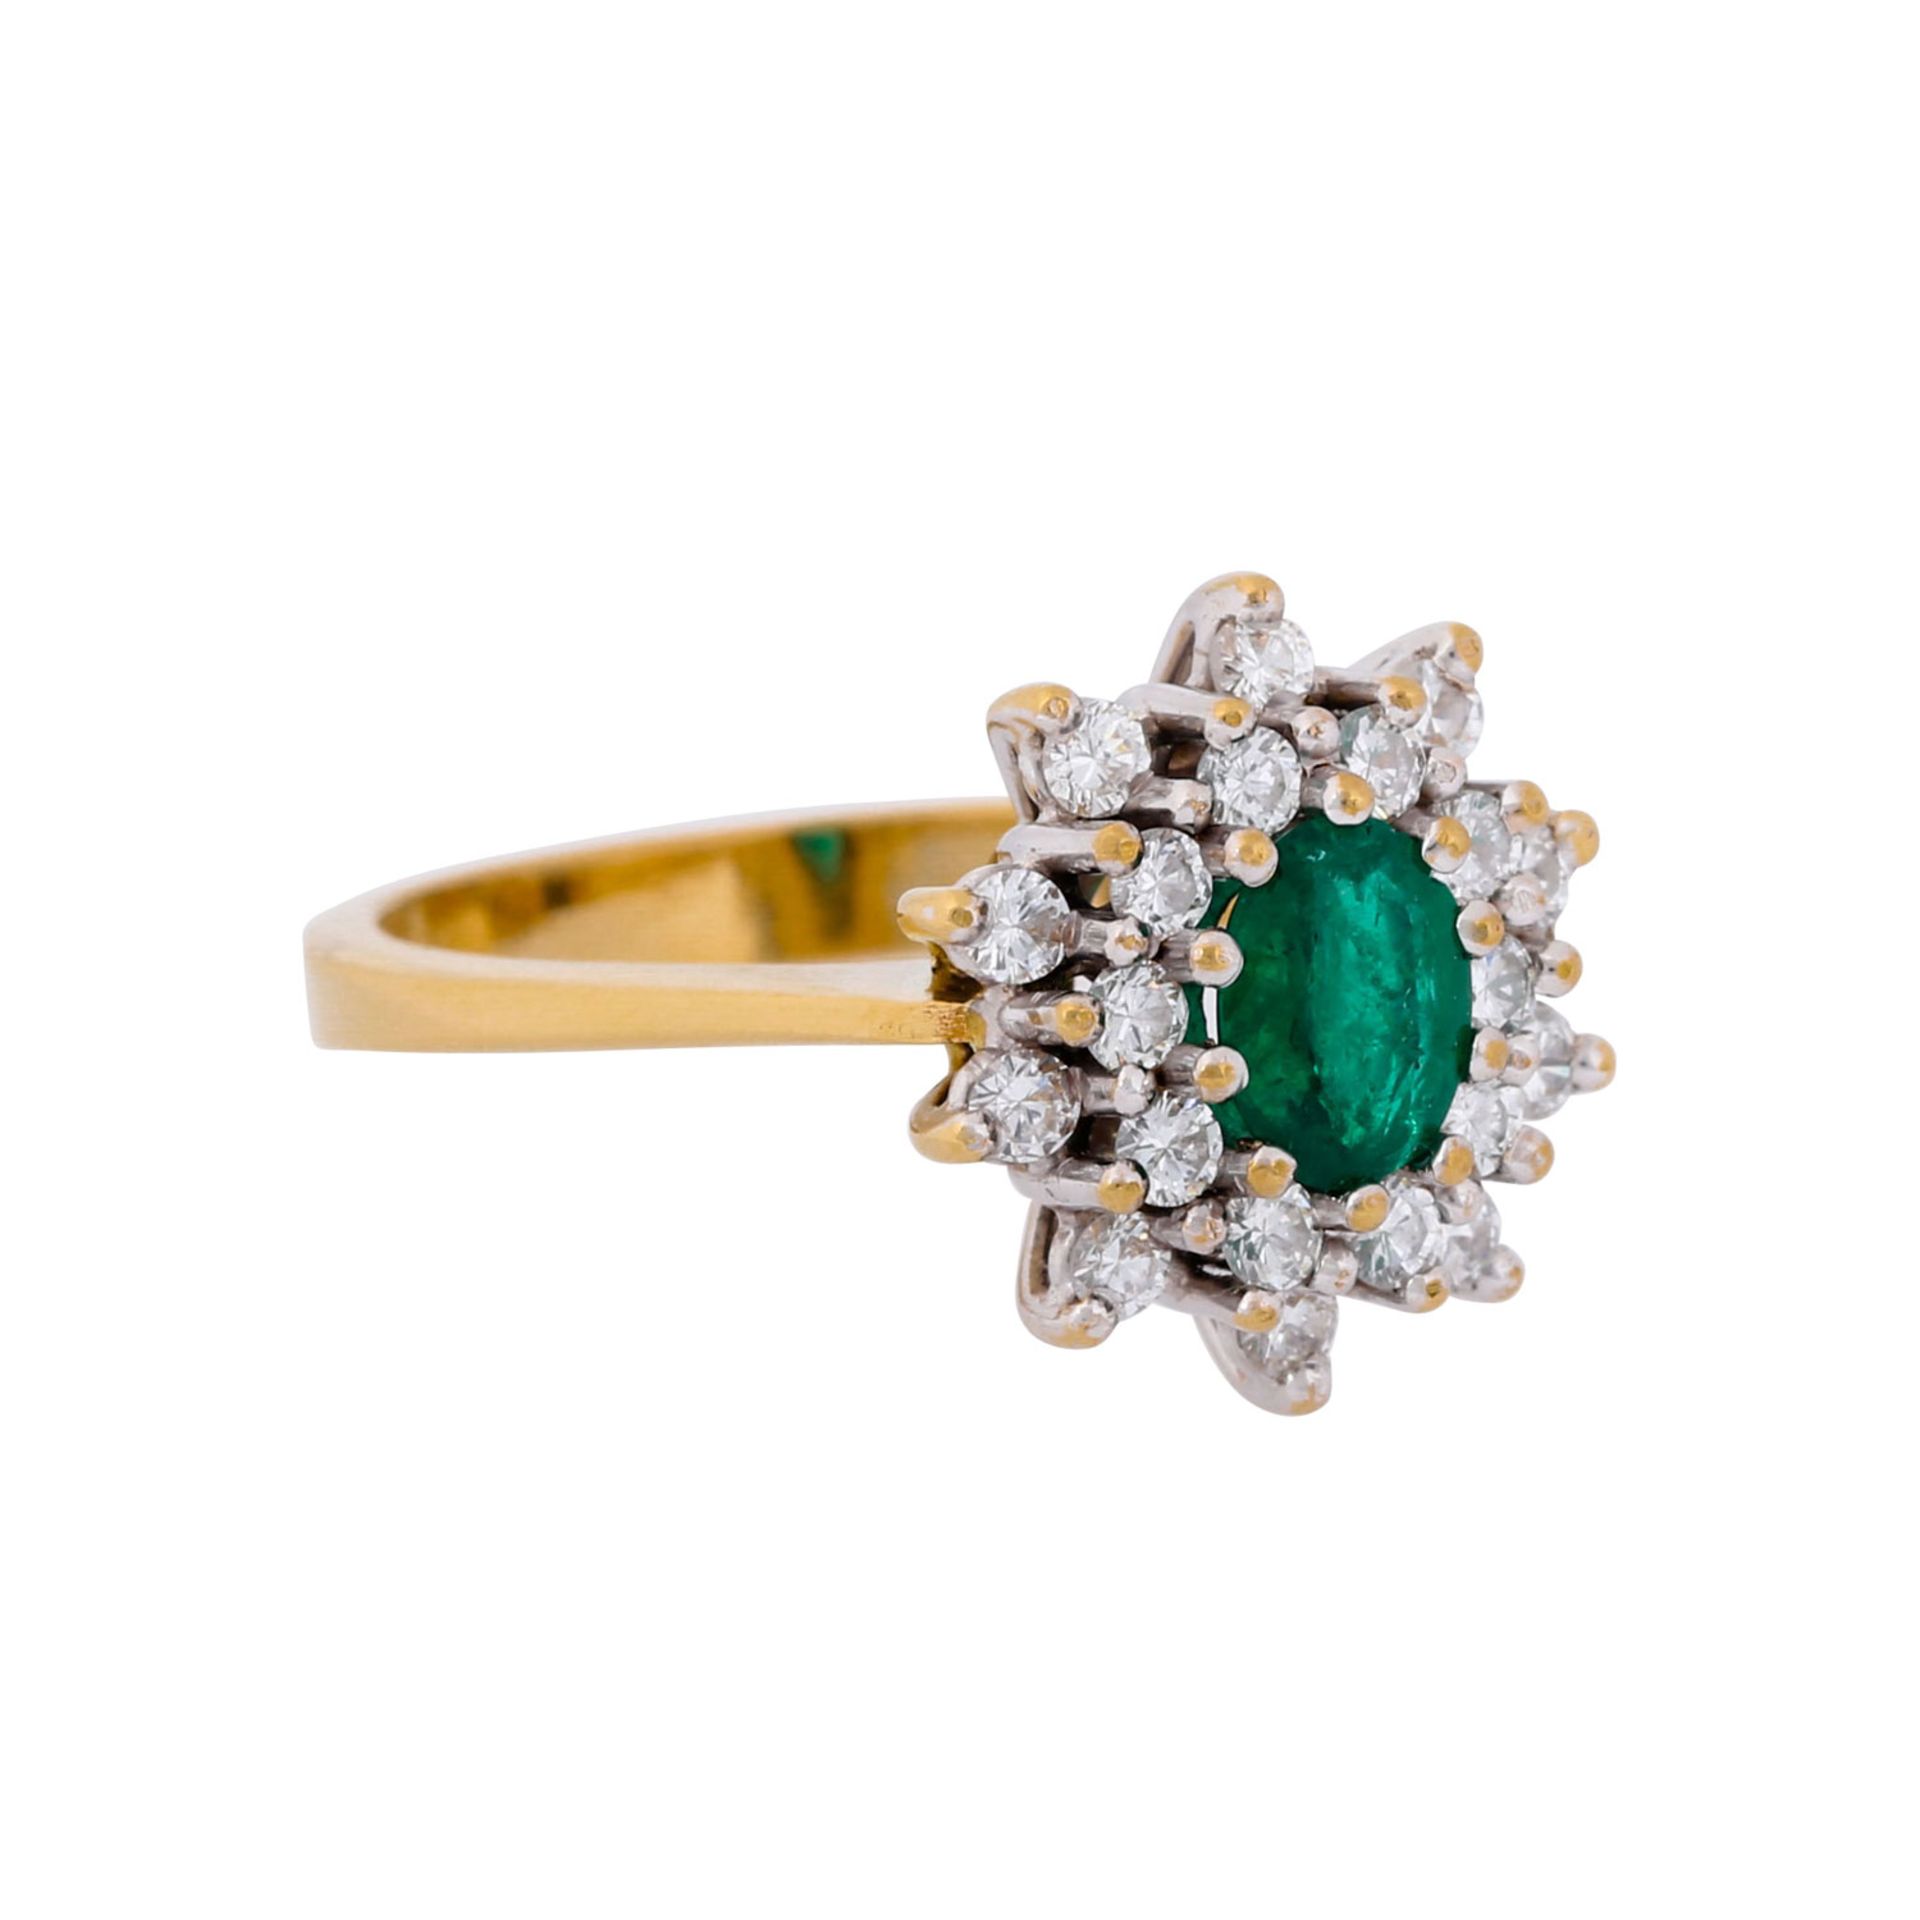 Ring mit ovalem Smaragd ca. 0,5 ct und Brillanten zus. ca. 0,4 ct,